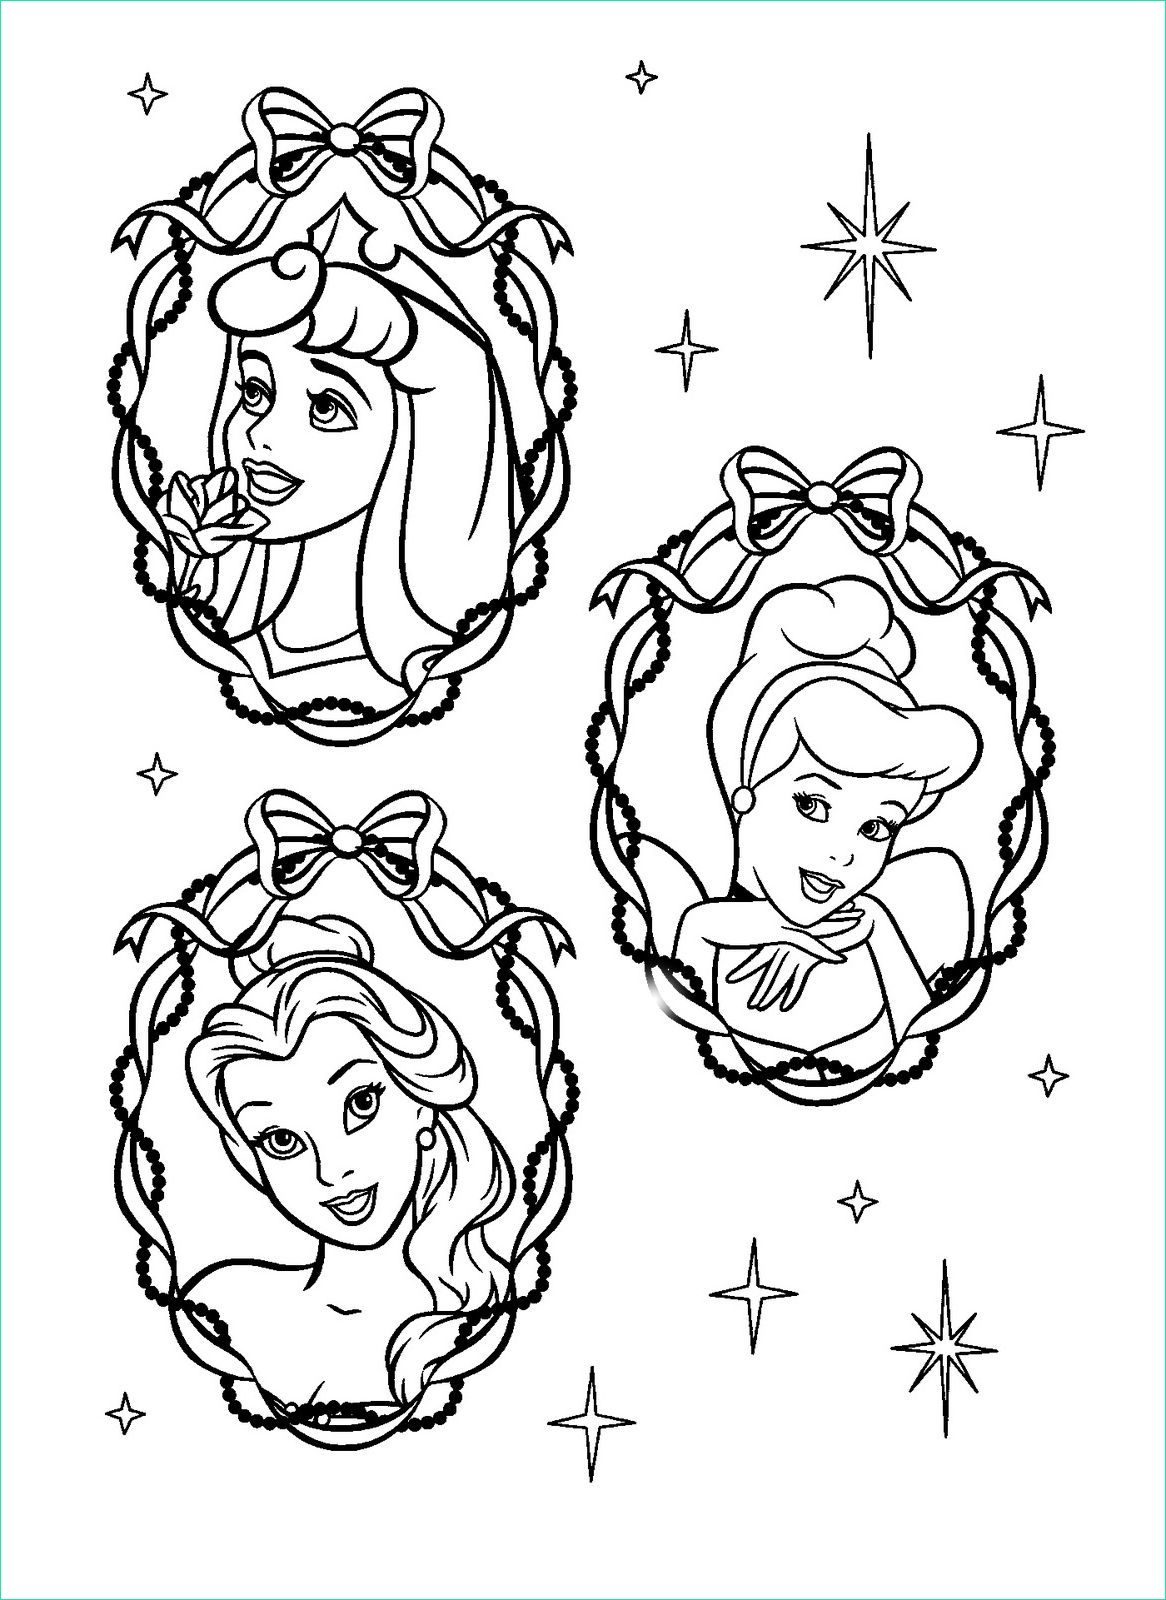 Dessin A Imprimer De Princesse Luxe Images Coloriage De Noel Princesse Disney